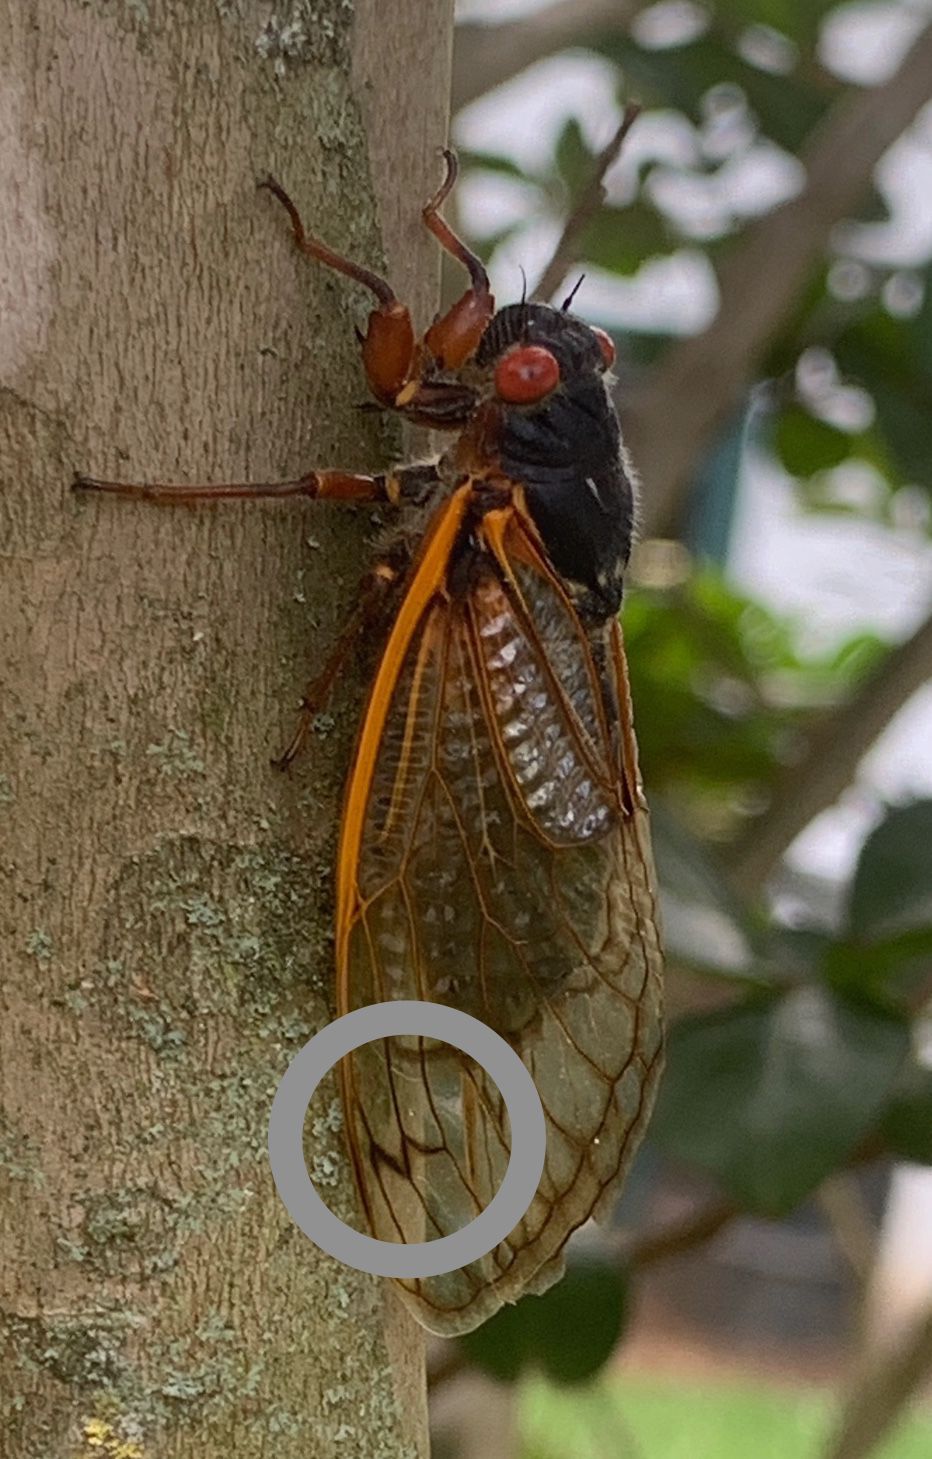 queen of the cicadas